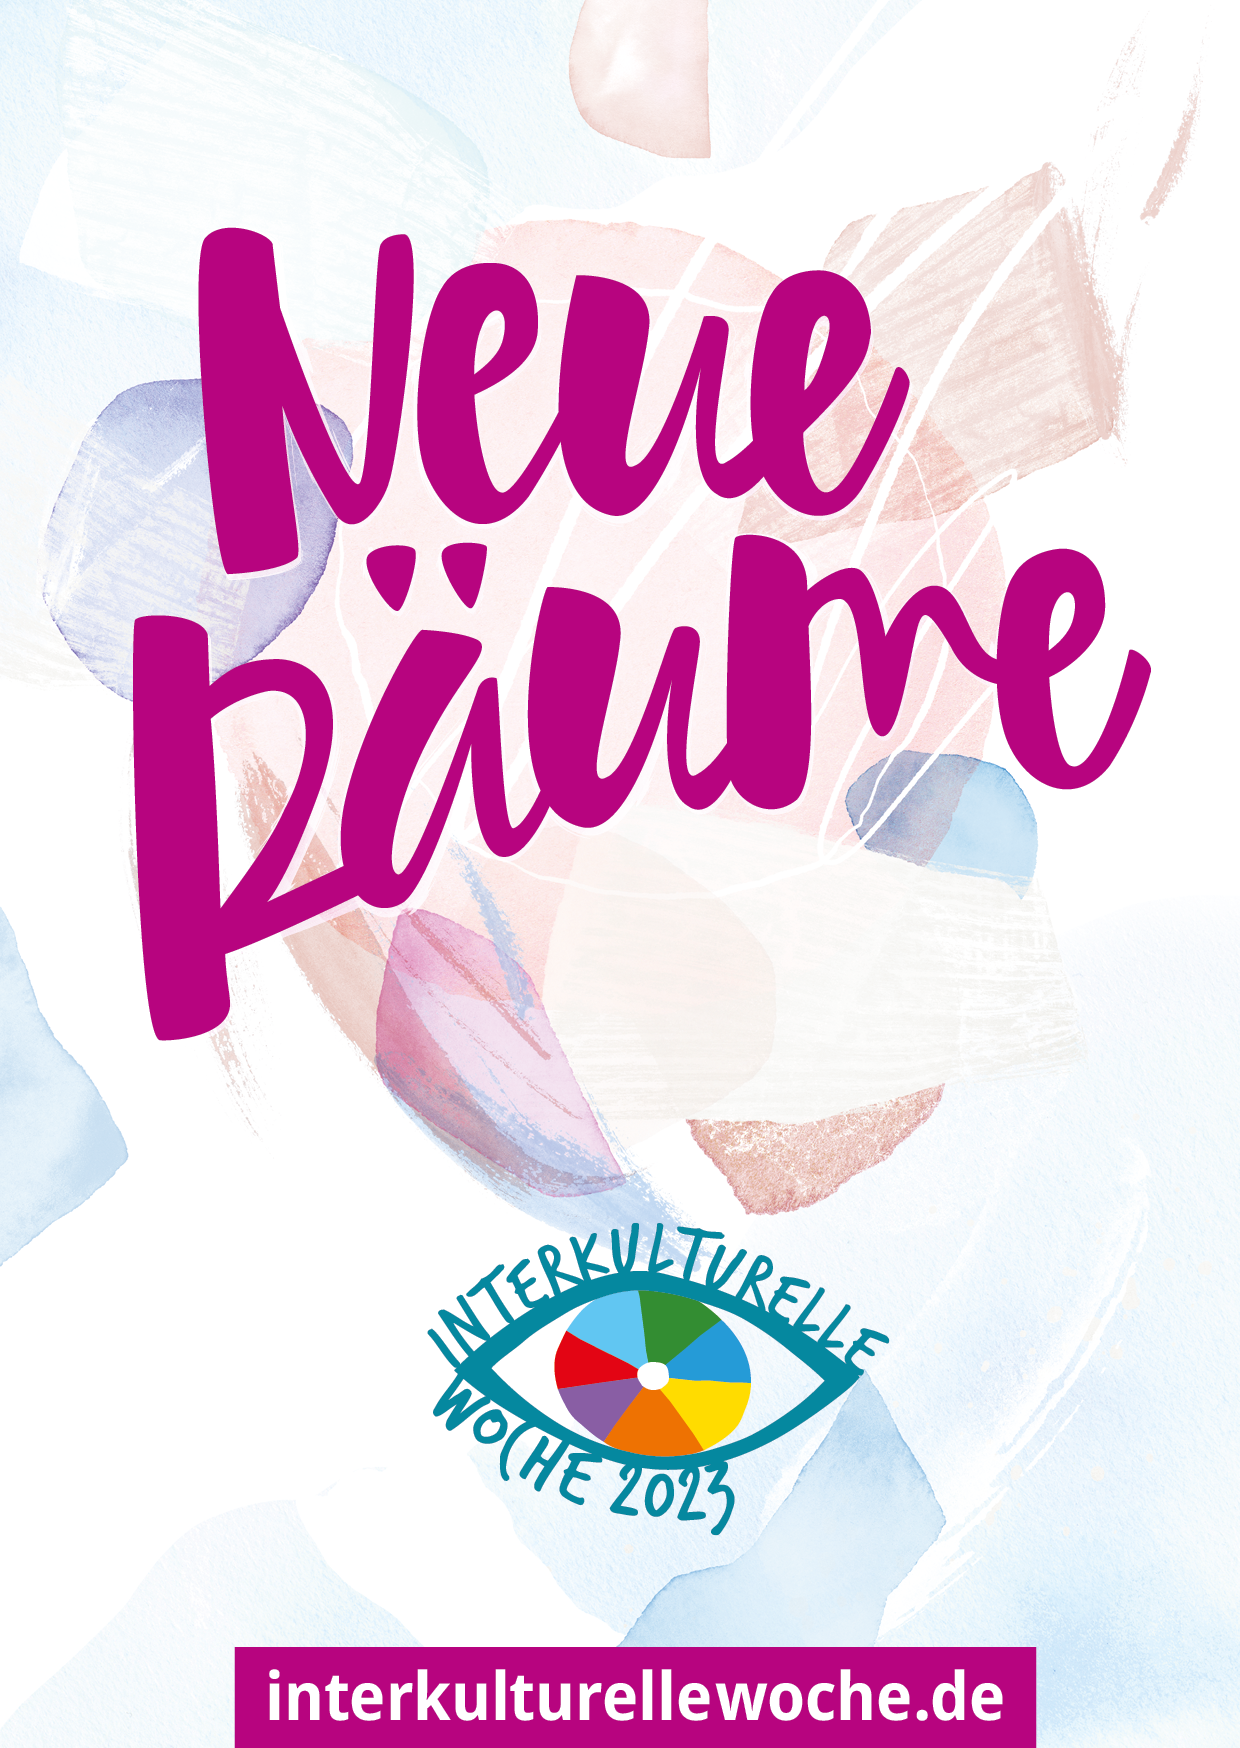 Plakat/Postkarte "Neue Räume"